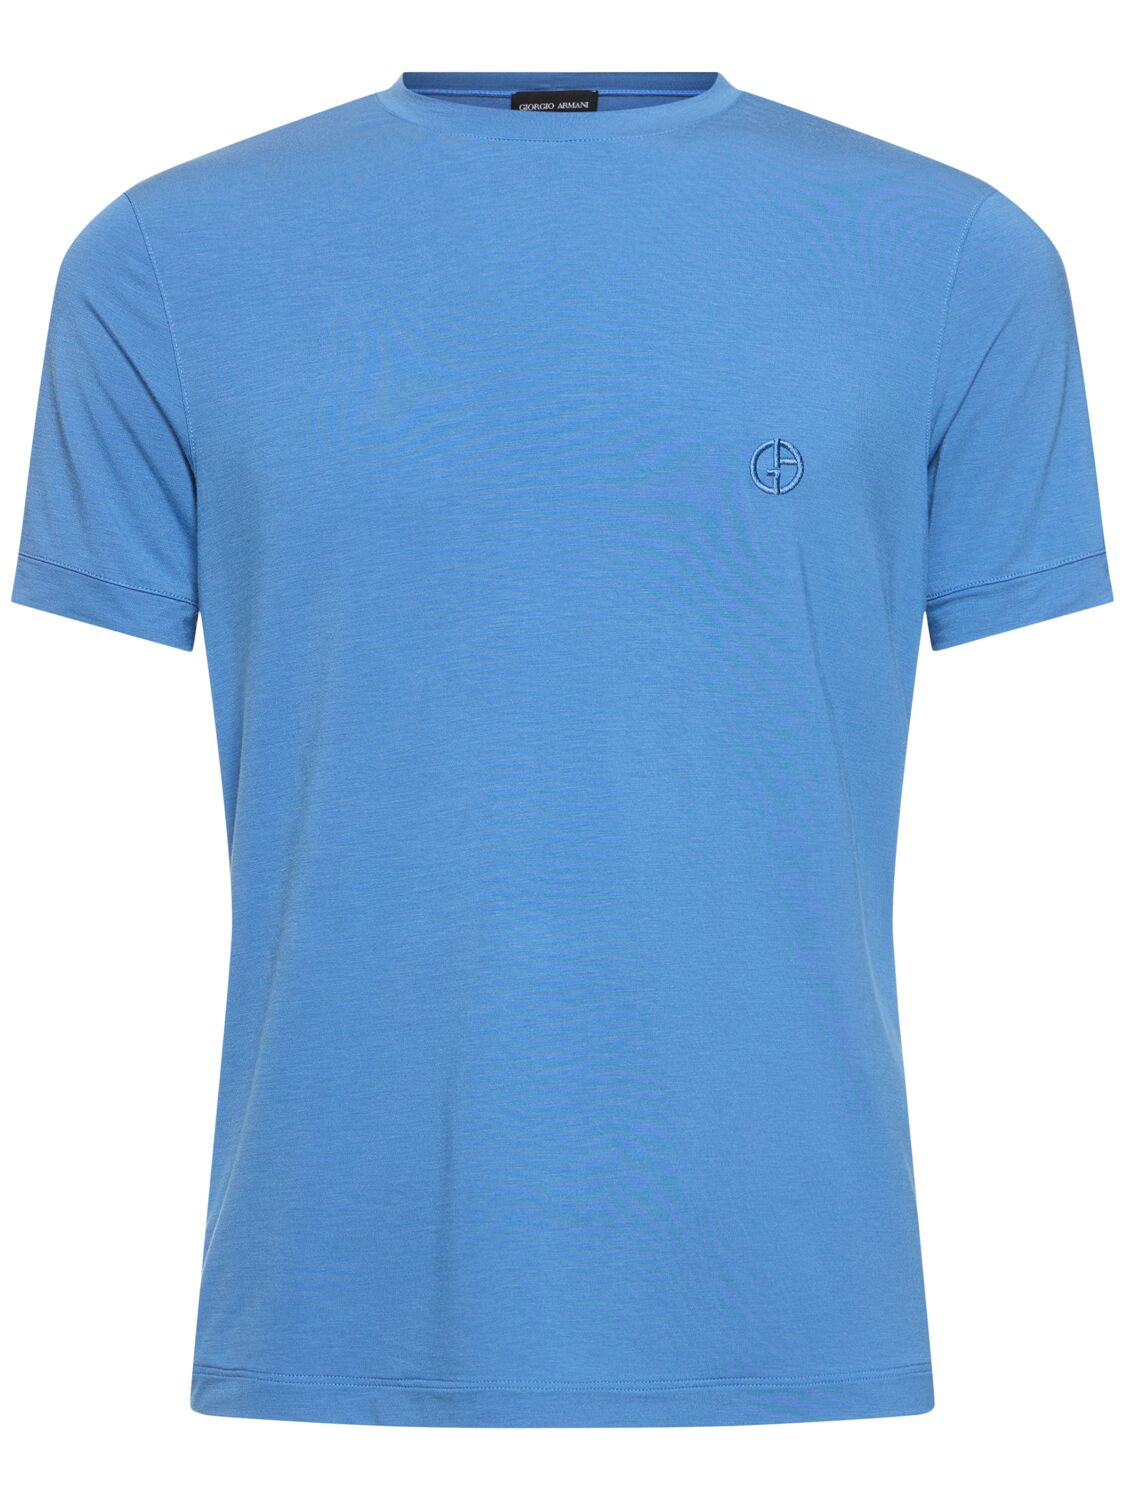 Giorgio Armani Mercerized Viscose Jersey T-shirt In Ortensia